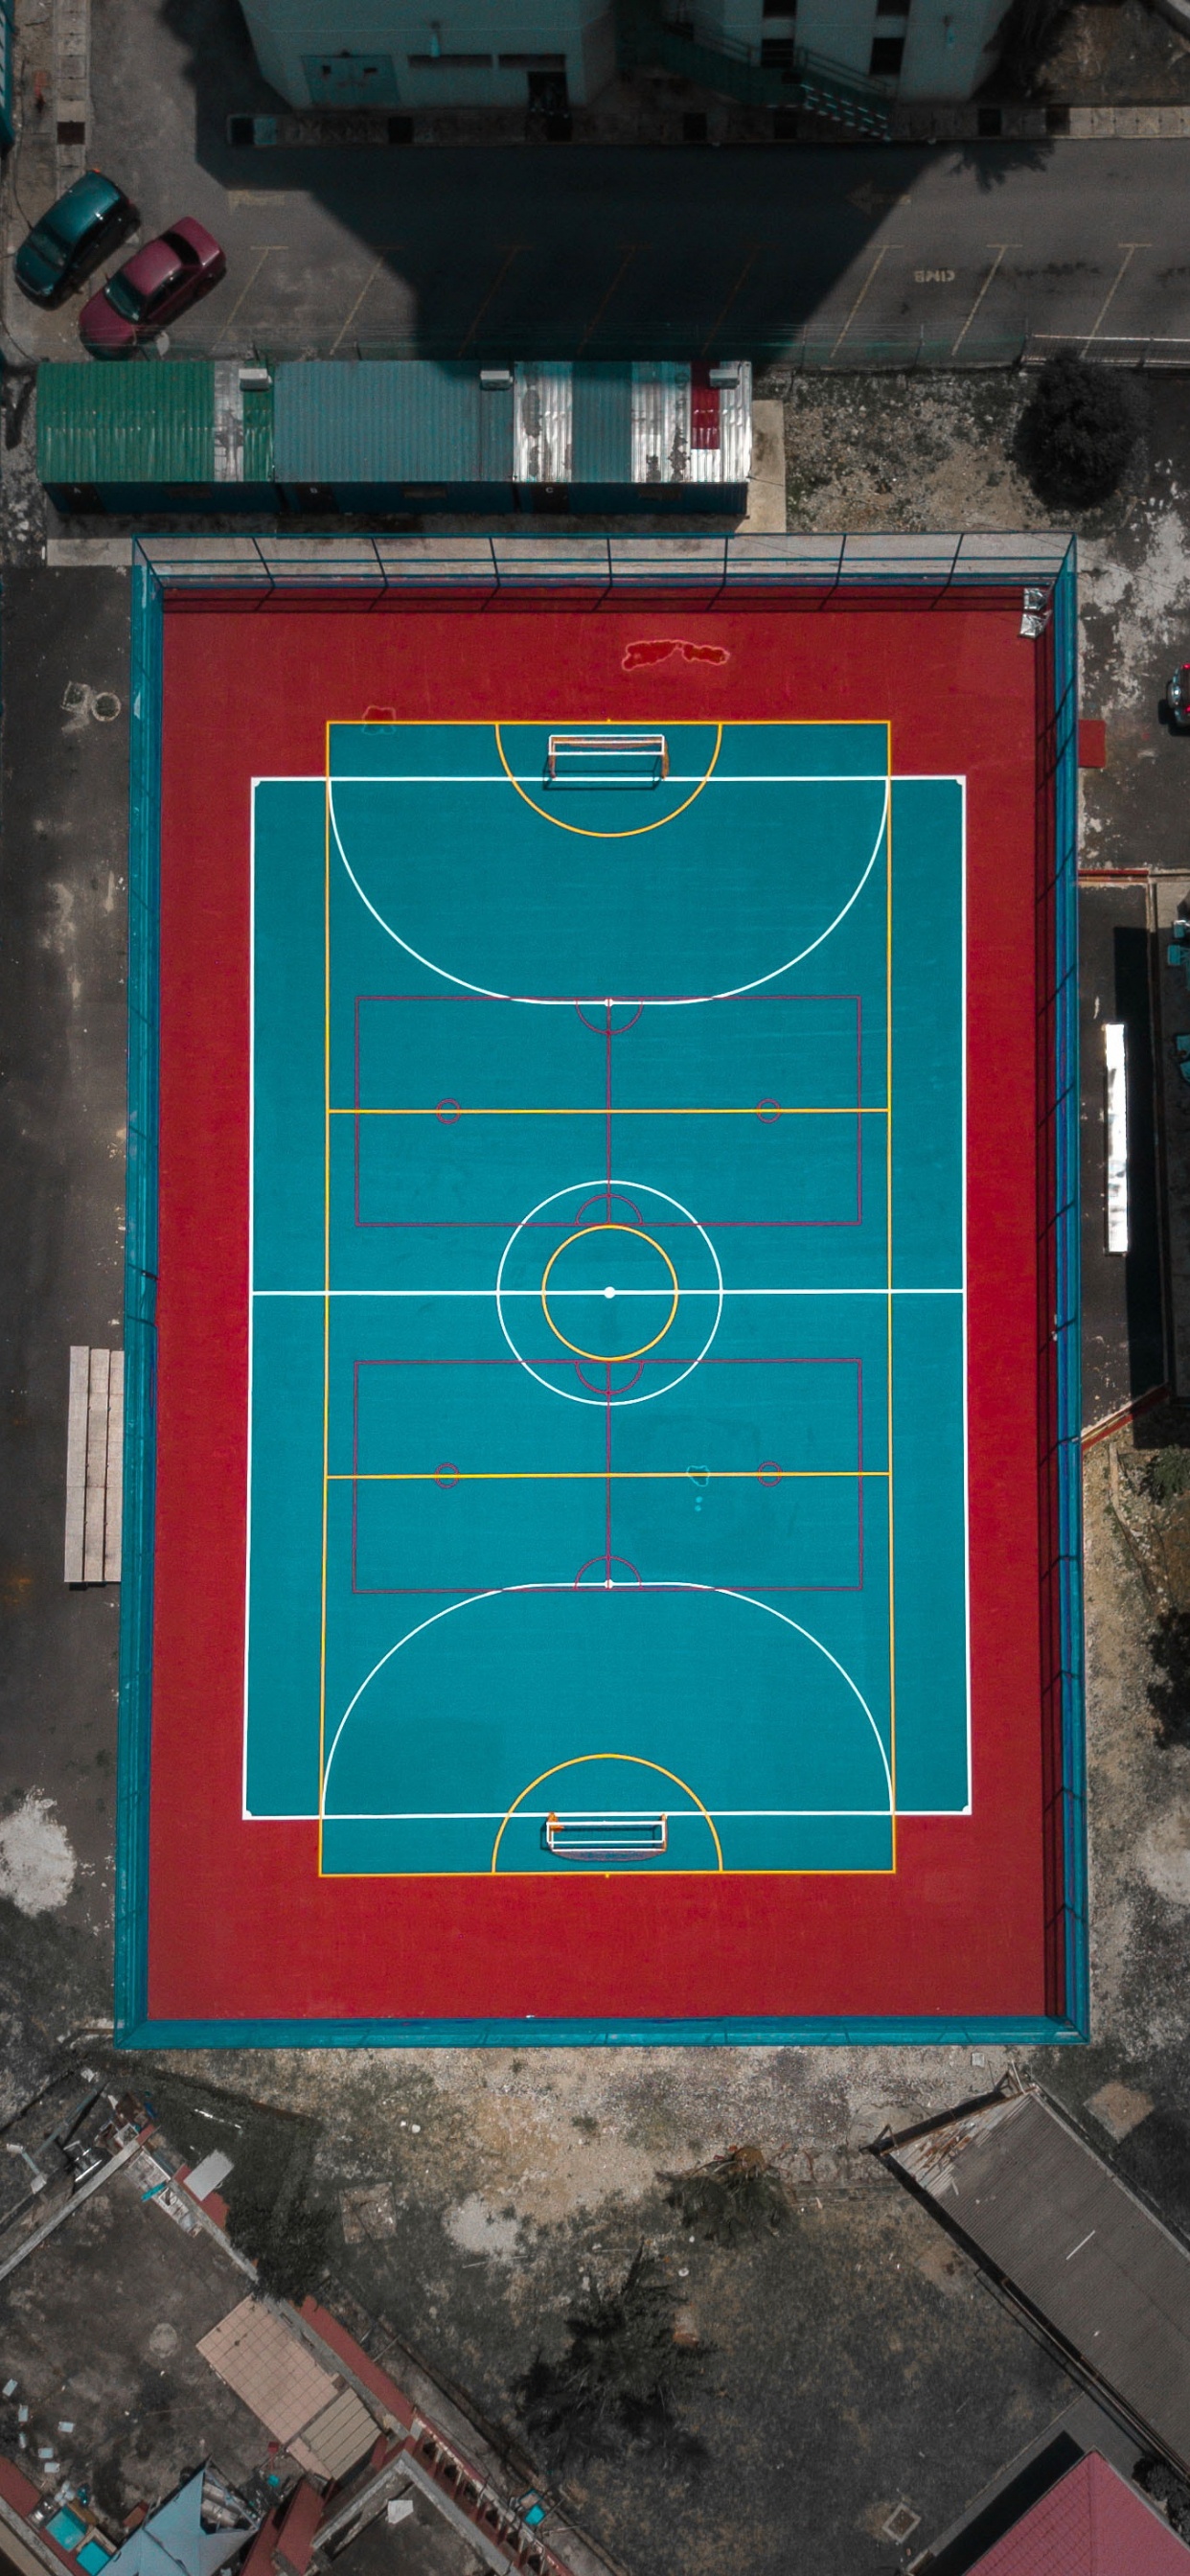 Games, Anfield, Futsal, Basketballplatz, Pitch. Wallpaper in 1242x2688 Resolution